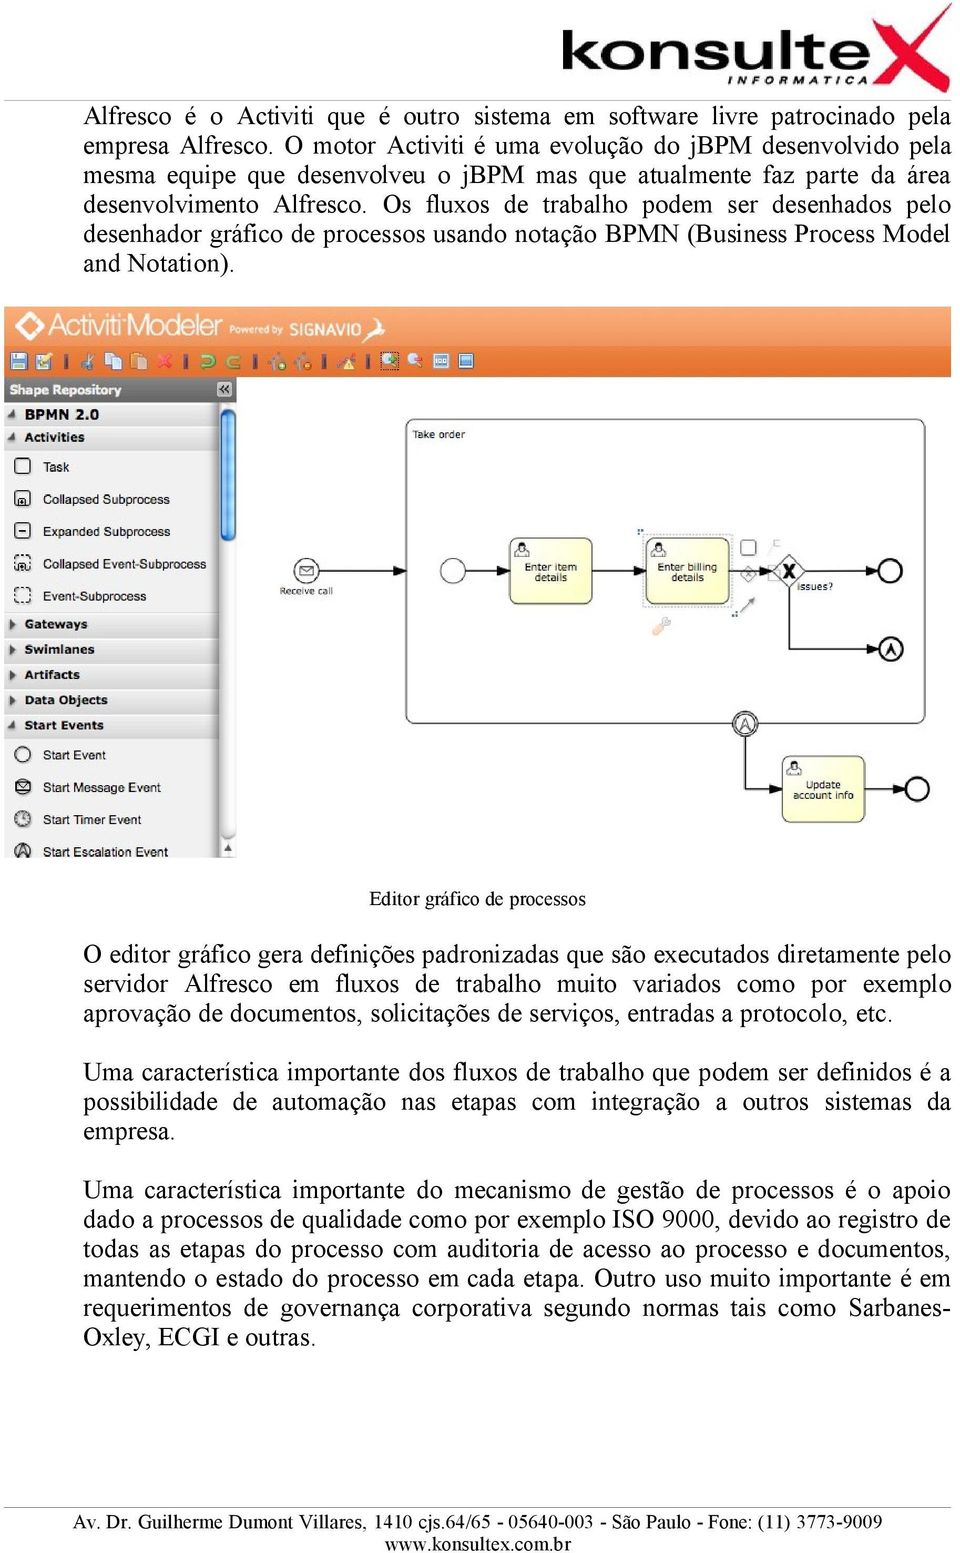 Os fluxos de trabalho podem ser desenhados pelo desenhador gráfico de processos usando notação BPMN (Business Process Model and Notation).